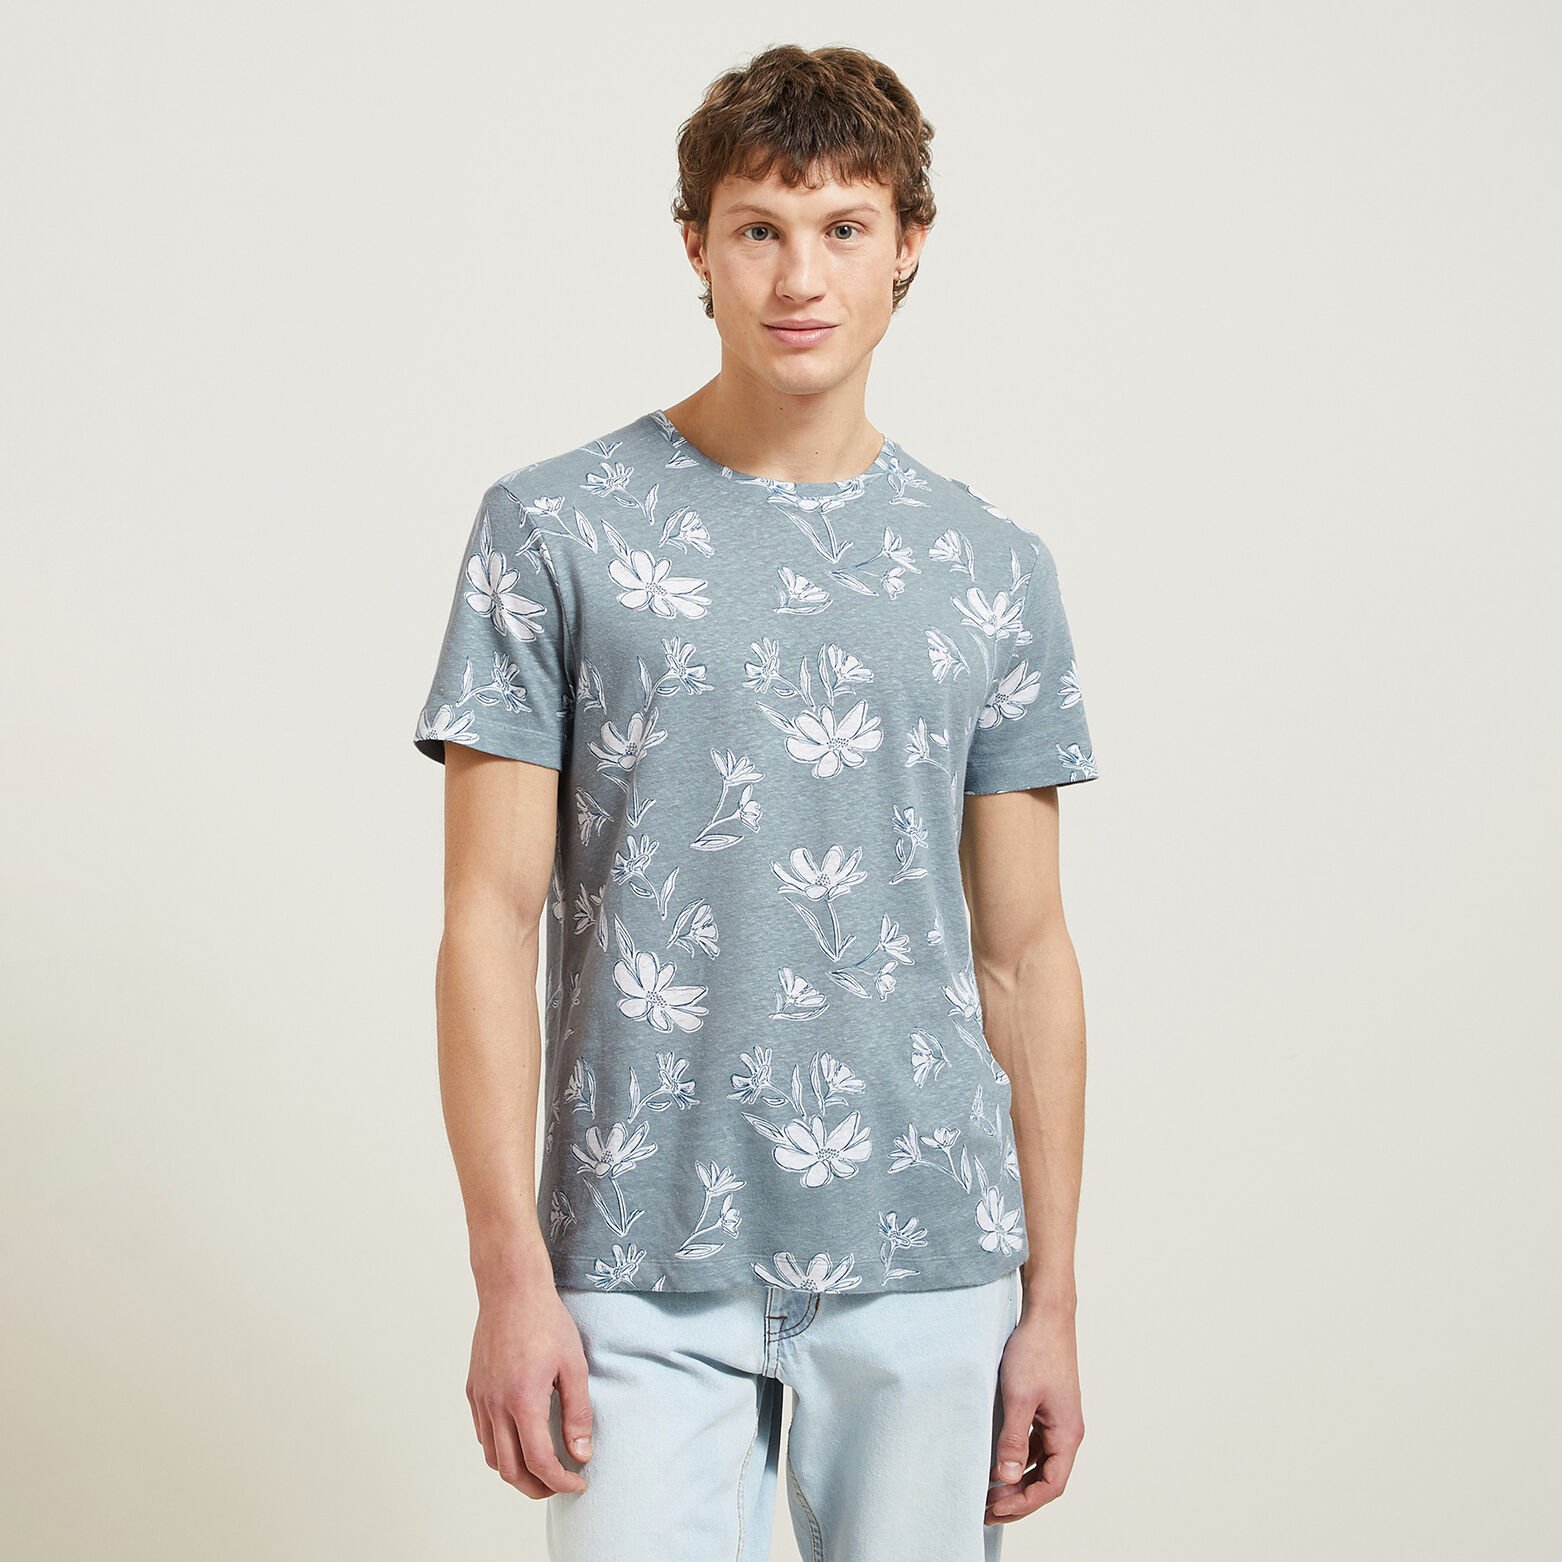 T-shirt met bloemenprint in katoen/linnen